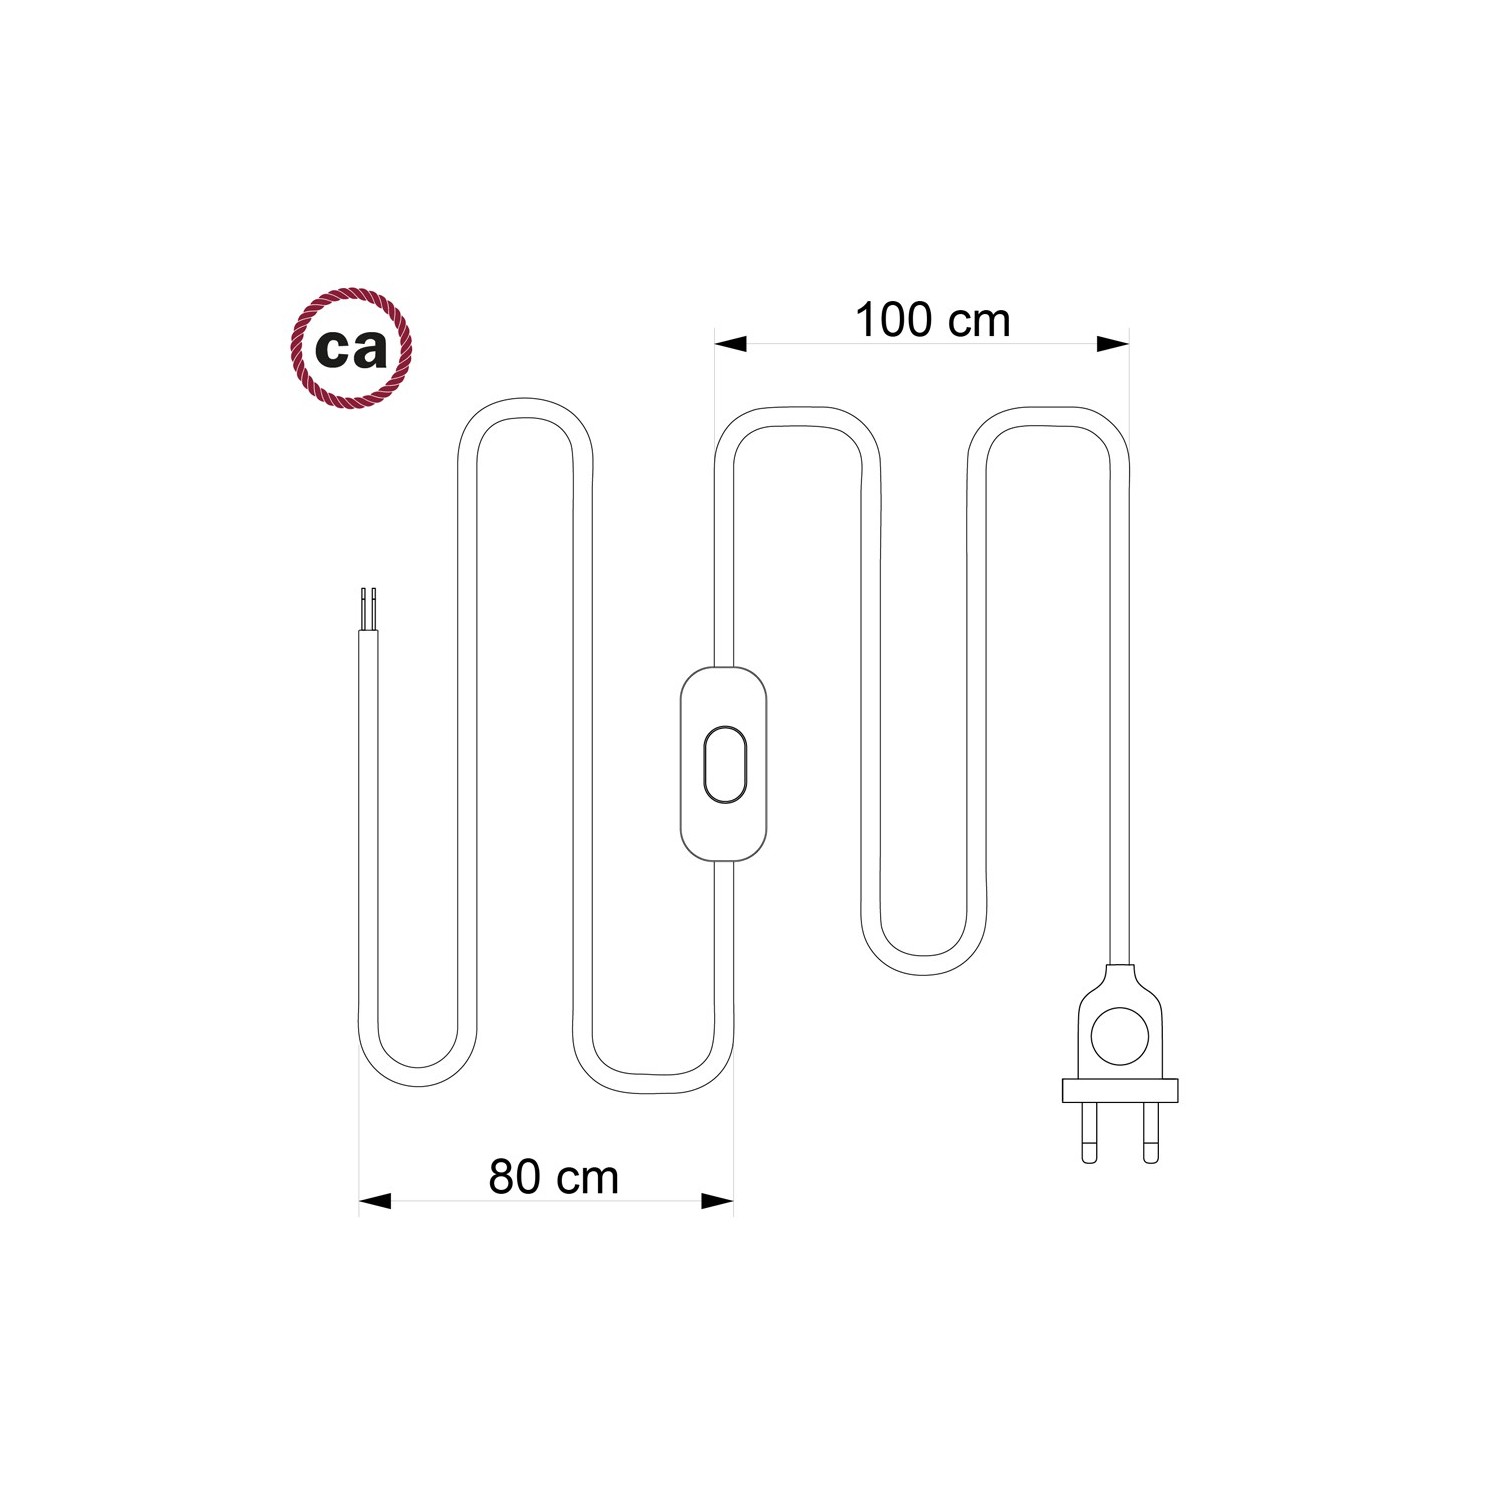 Cordon pour lampe, câble RC43 Coton Tourterelle 1,80 m. Choisissez la couleur de la fiche et de l'interrupteur!